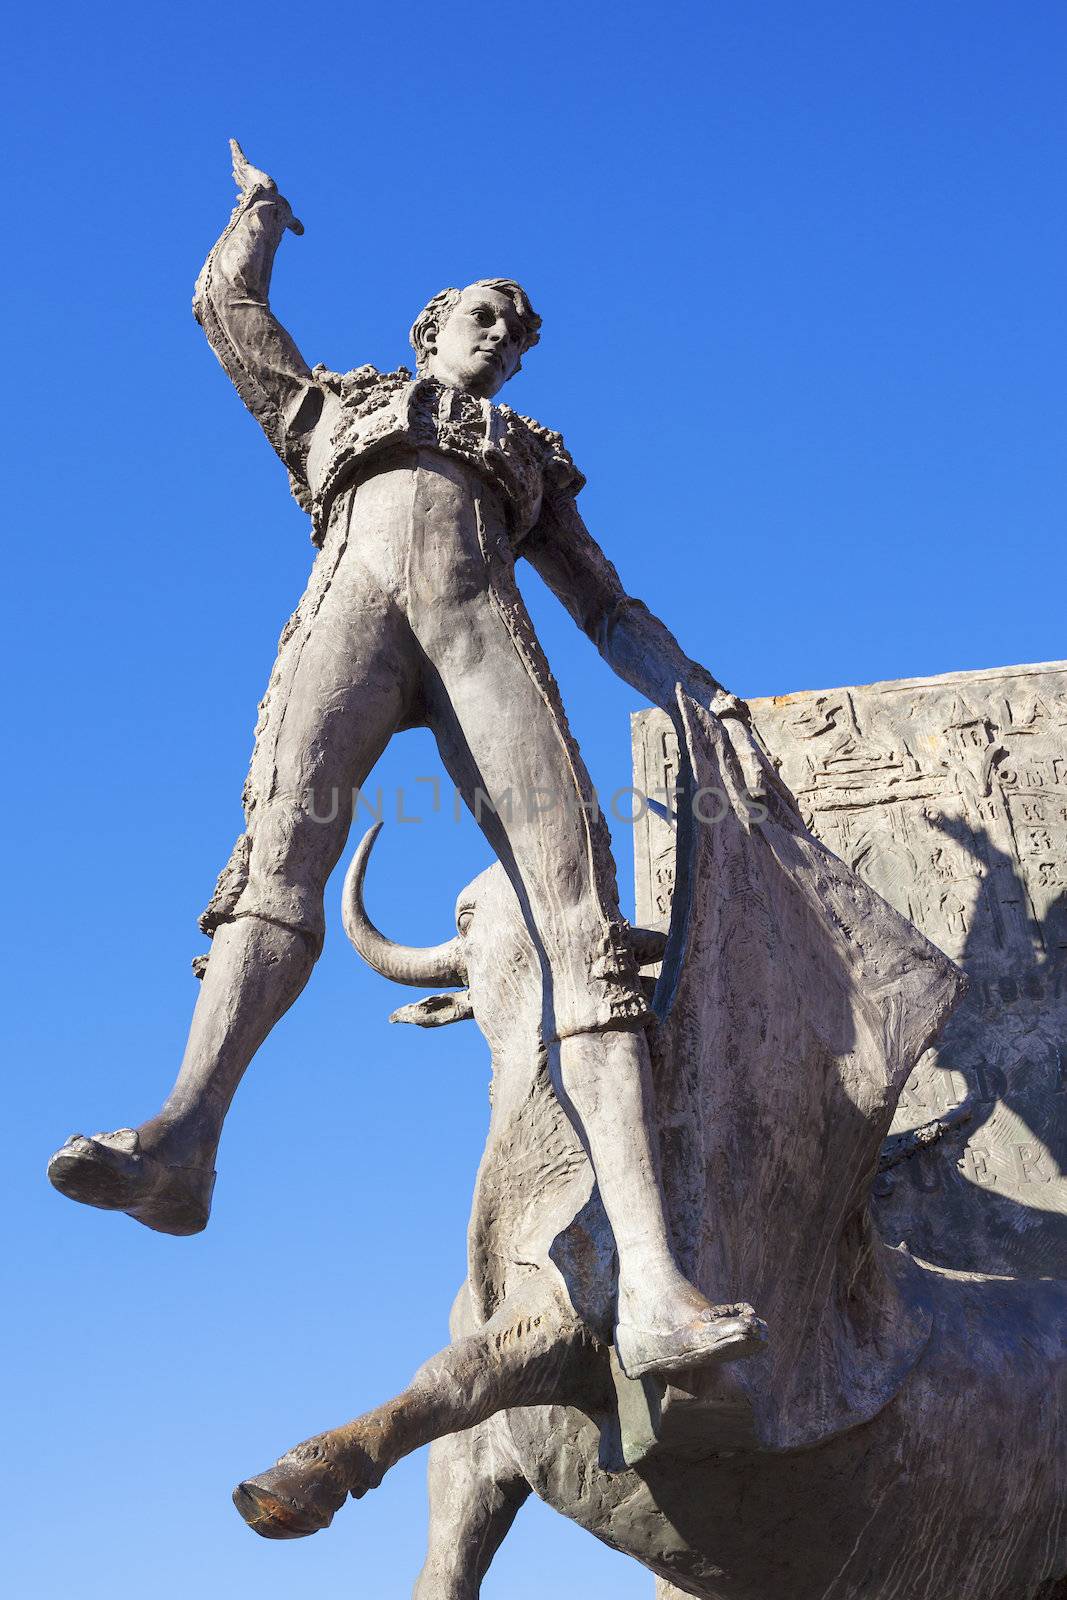 Bullfighter sculpture in front of Bullfighting arena Plaza de Toros de Las Ventas in Madrid